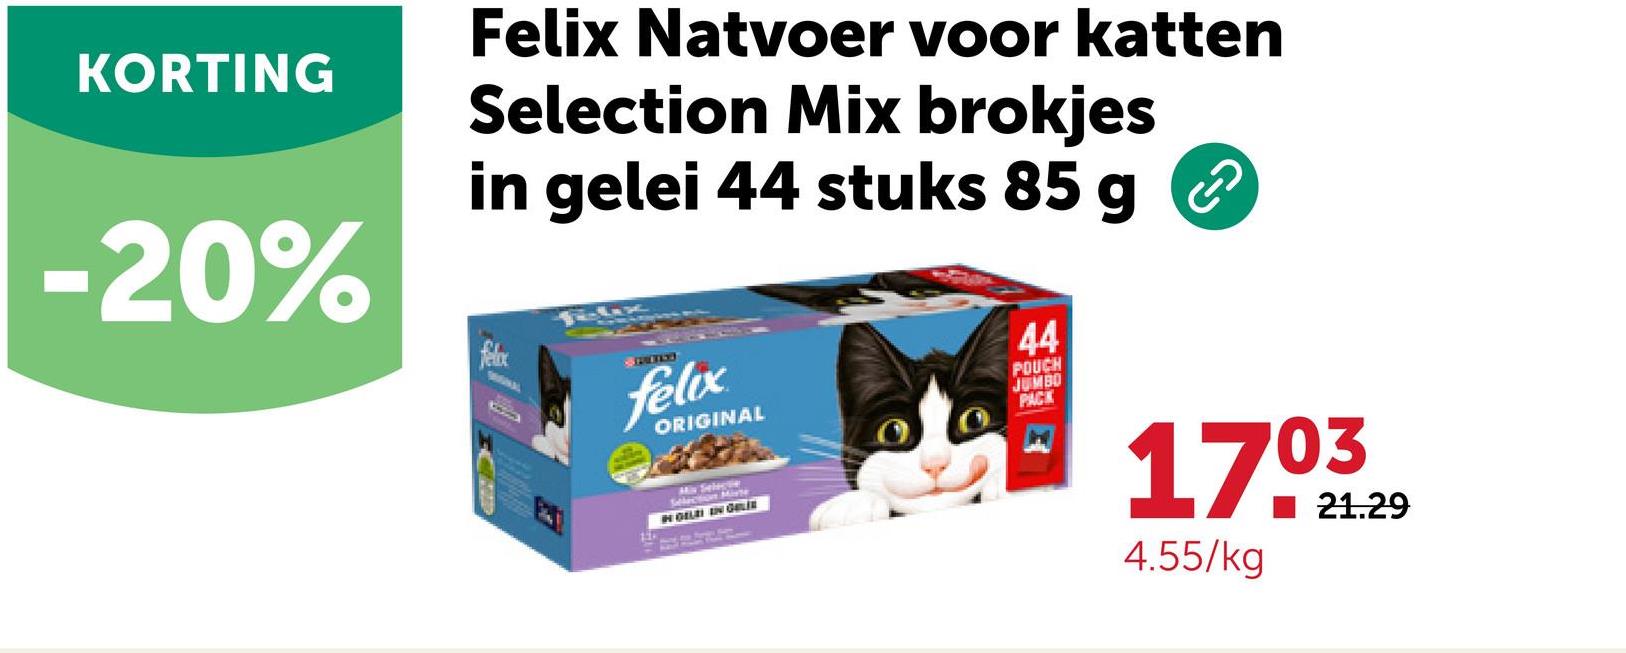 KORTING
-20%
Felix Natvoer voor katten
Selection Mix brokjes
in gelei 44 stuks 85 g
felix
SPEED
felix
ORIGINAL
Selection Miste
IN GELEI IN GALI
44
POUCH
JUMBO
PACK
G-O
1703
4.55/kg
21.29